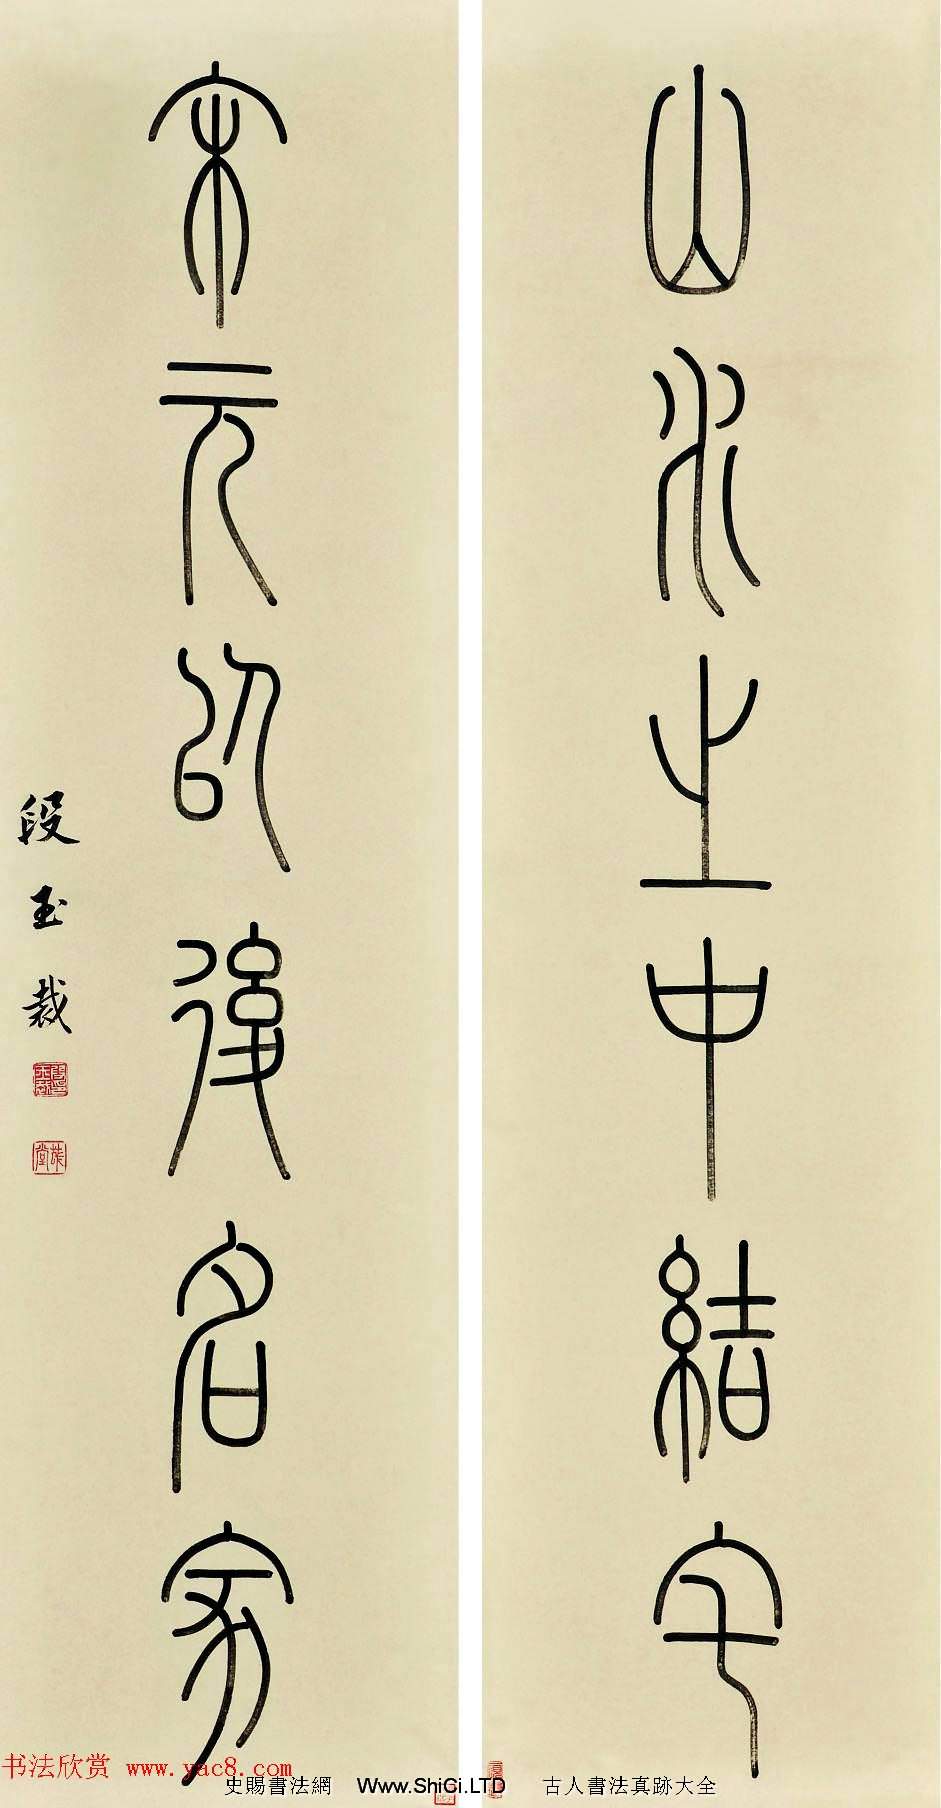 清代文字、音訓詁學家段玉裁書法墨跡（共11張圖片）